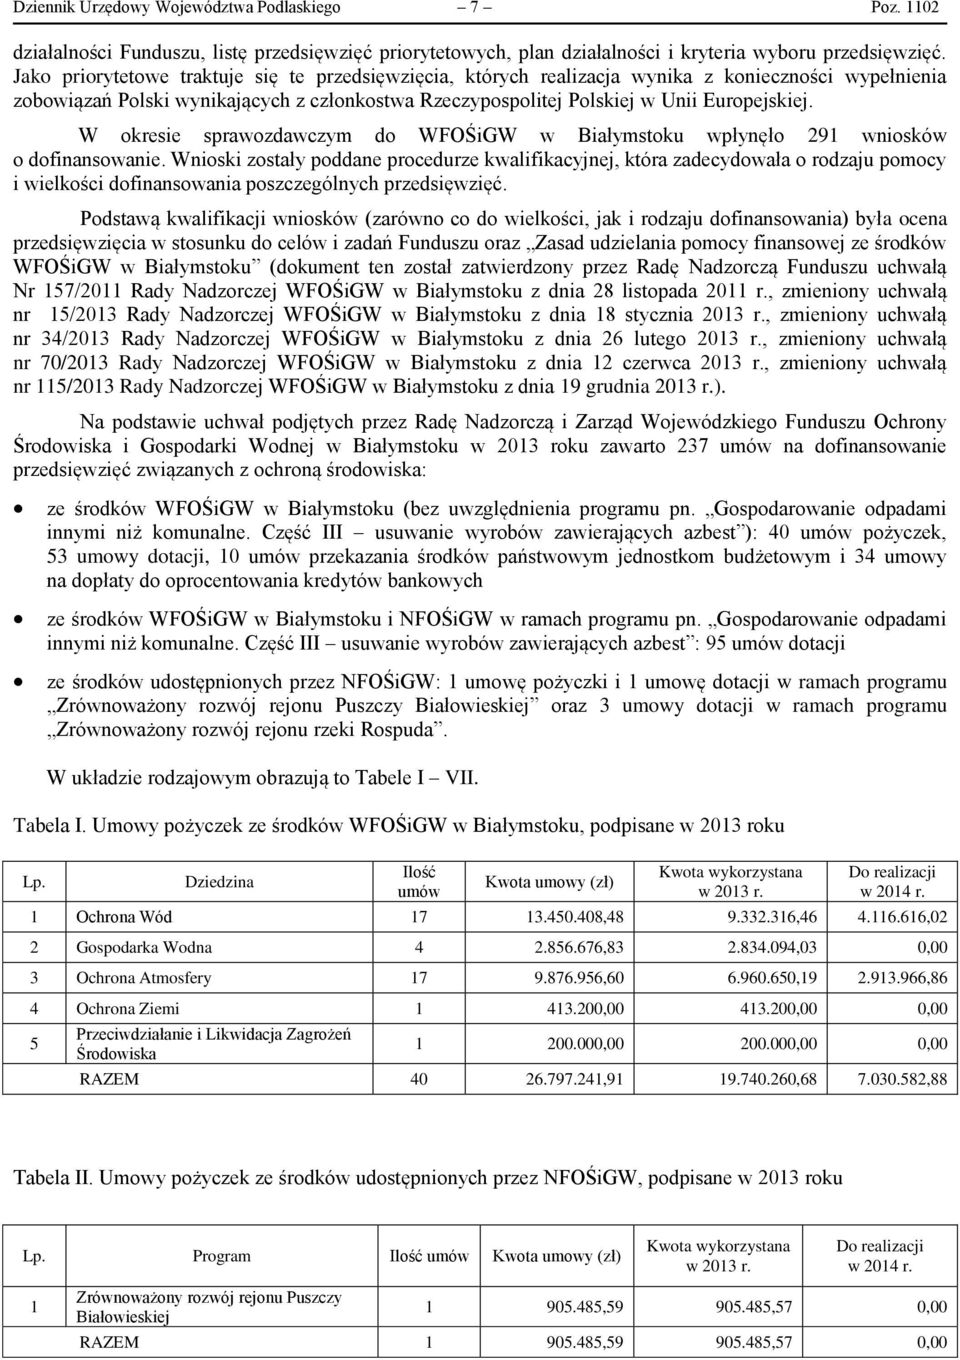 W okresie sprawozdawczym do WFOŚiGW w Białymstoku wpłynęło 291 wniosków o dofinansowanie.